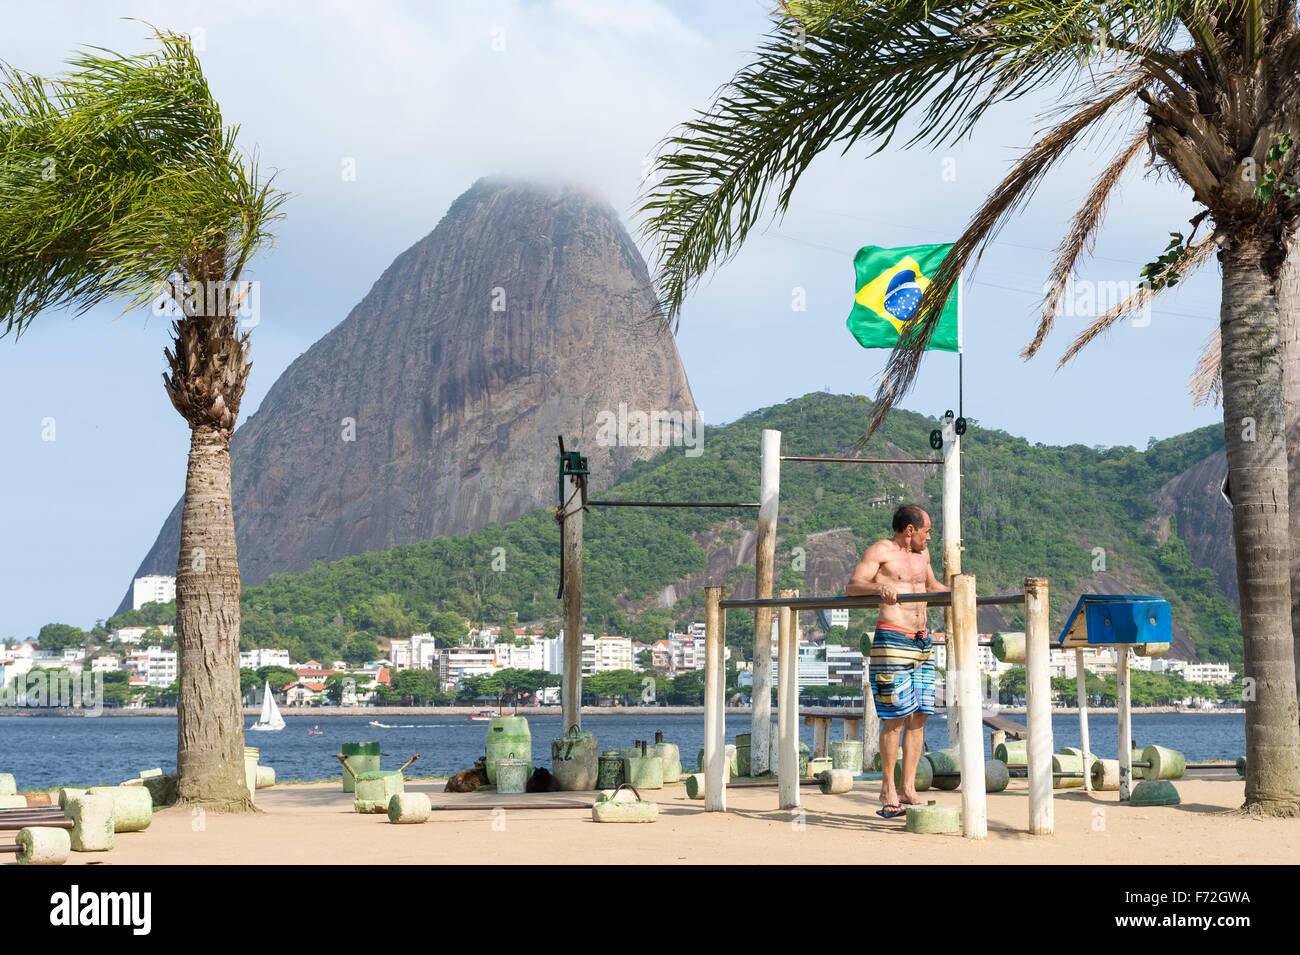 Río de Janeiro, Brasil - Octubre 17, 2015: el joven brasileño ejercicios en una estación de ejercicios al aire libre en el barrio de Flamengo. Foto de stock